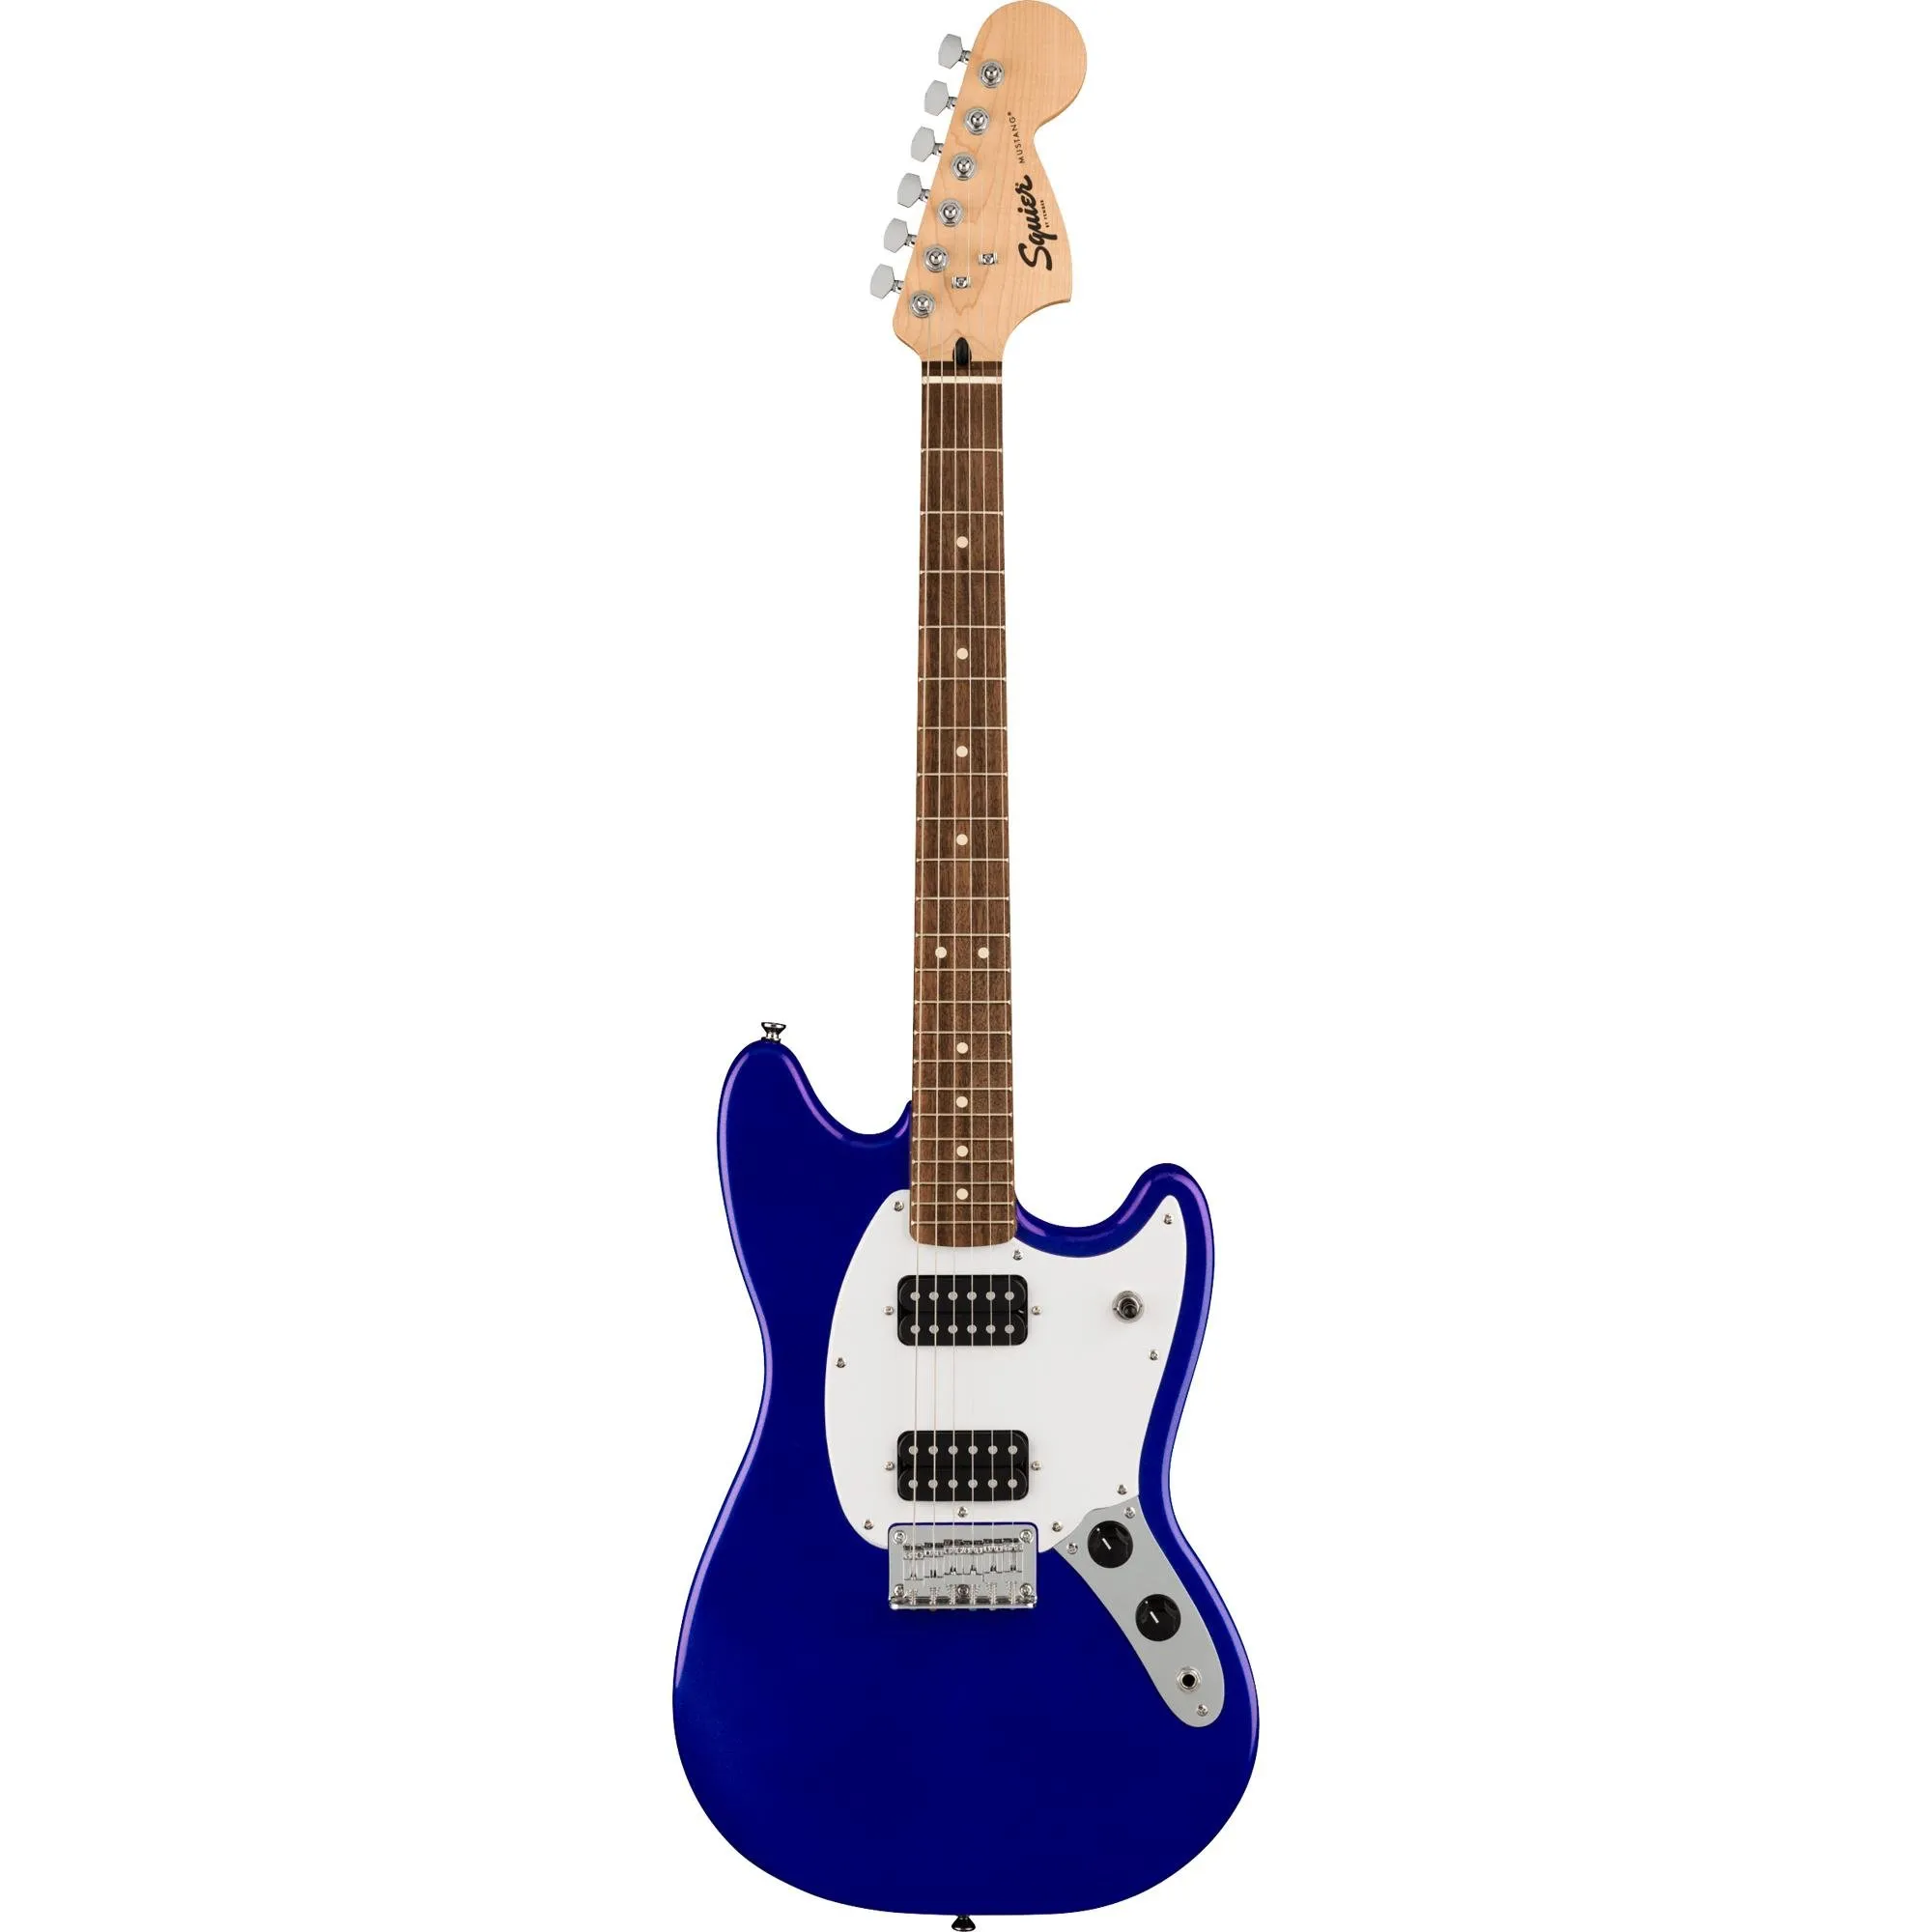 Guitarra Squier Bullet Mustang Azul Imperial por 2.538,99 à vista no boleto/pix ou parcele em até 12x sem juros. Compre na loja Mundomax!